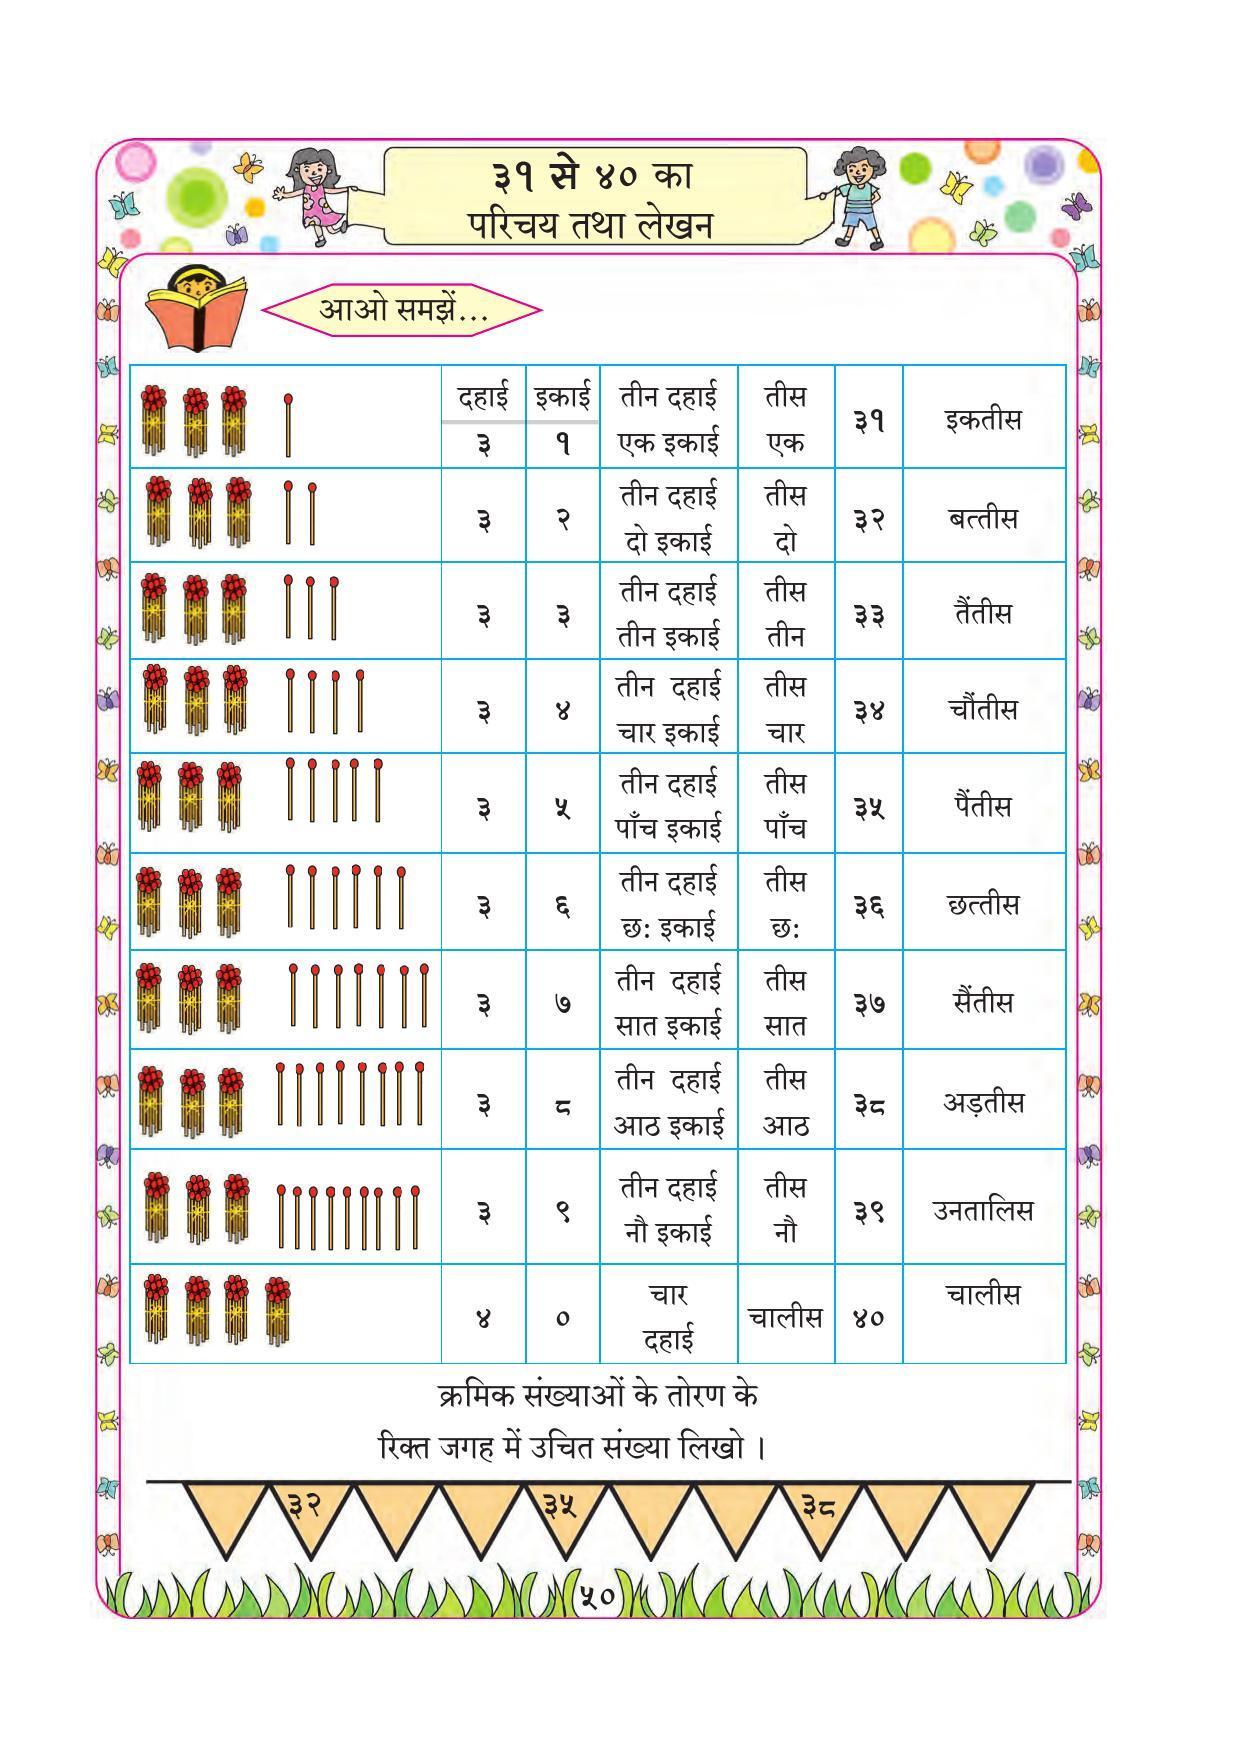 Maharashtra Board Class 1 Maths (Hindi Medium) Textbook - Page 60